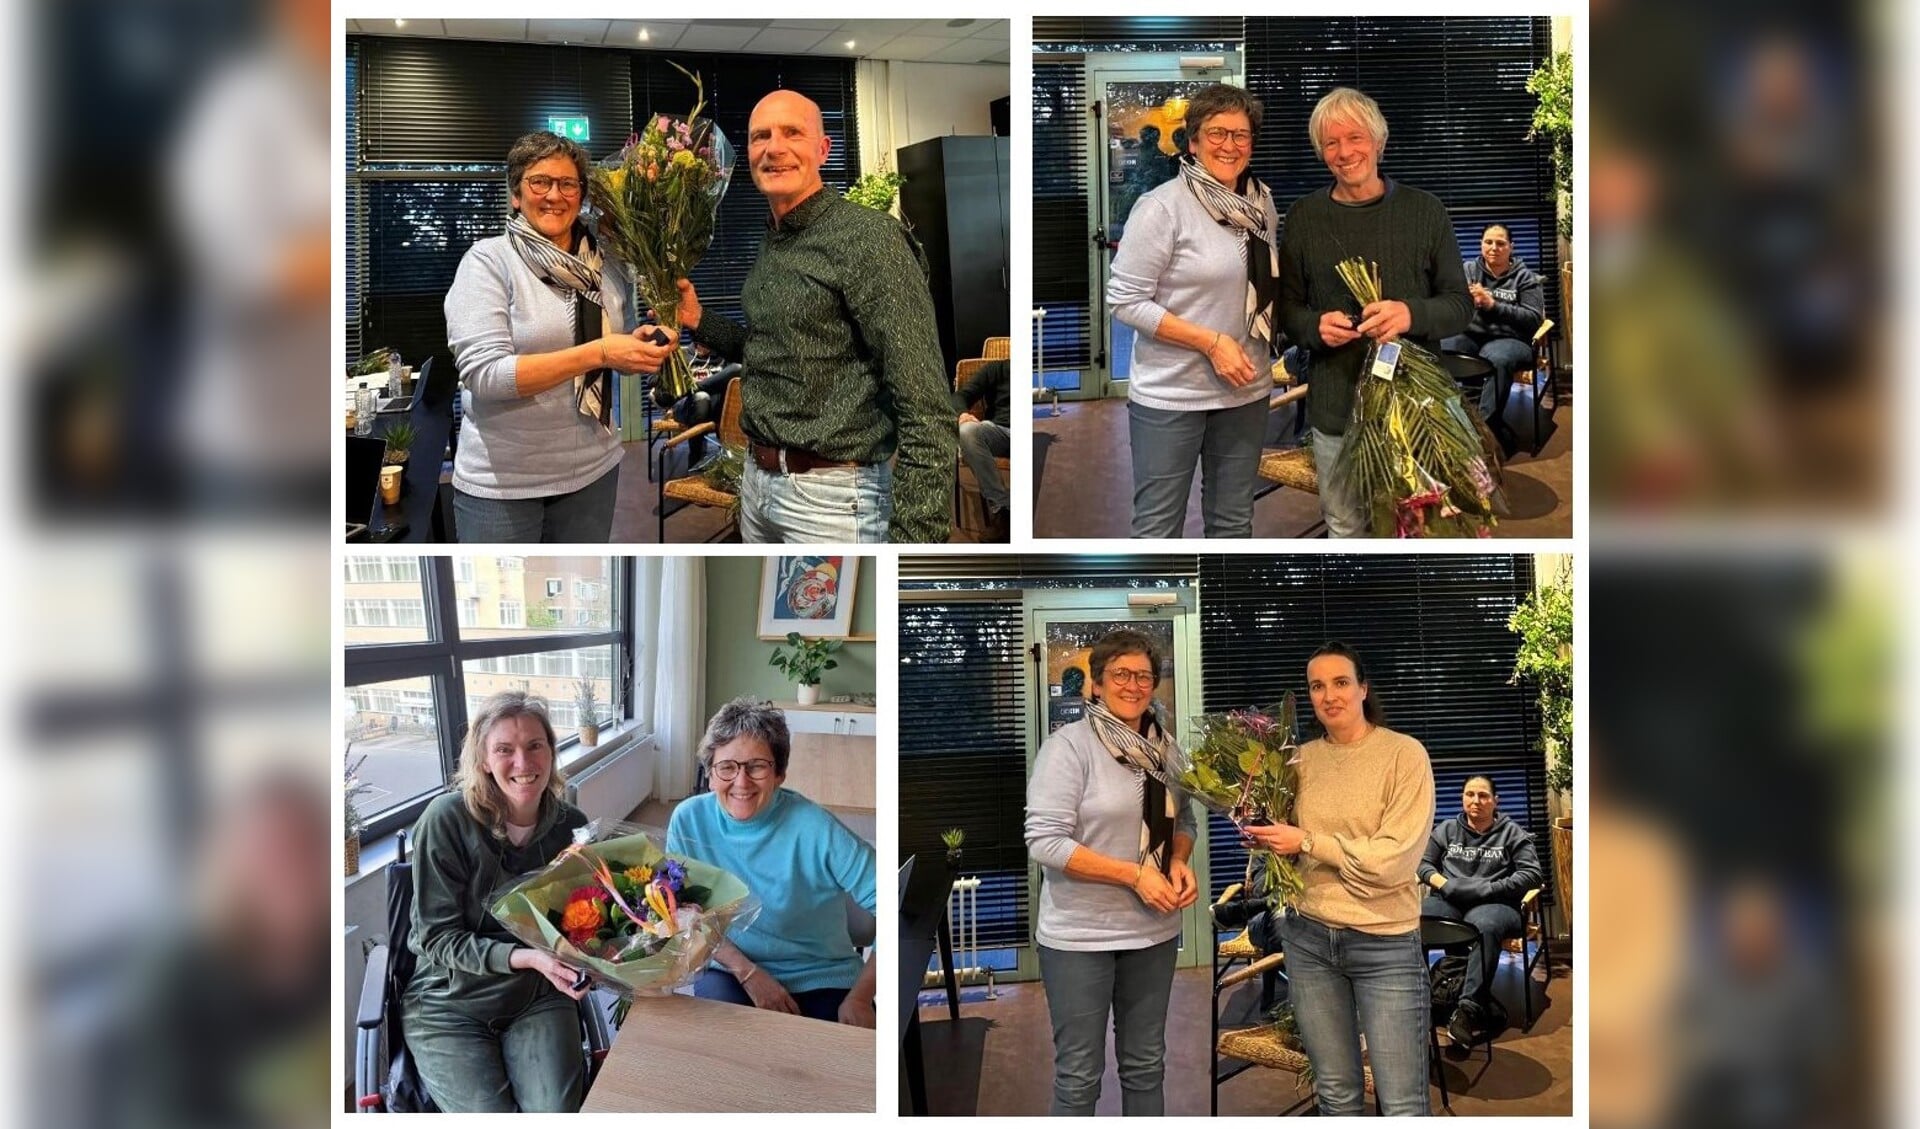 Uit handen van voorzitter Myra Houdijk ontvangen de jubilarissen bloemen en het ZVVS speldje: Sjaak Gieles, Emiel v.Elderen, Mariëlla Danse en Nadya Putter